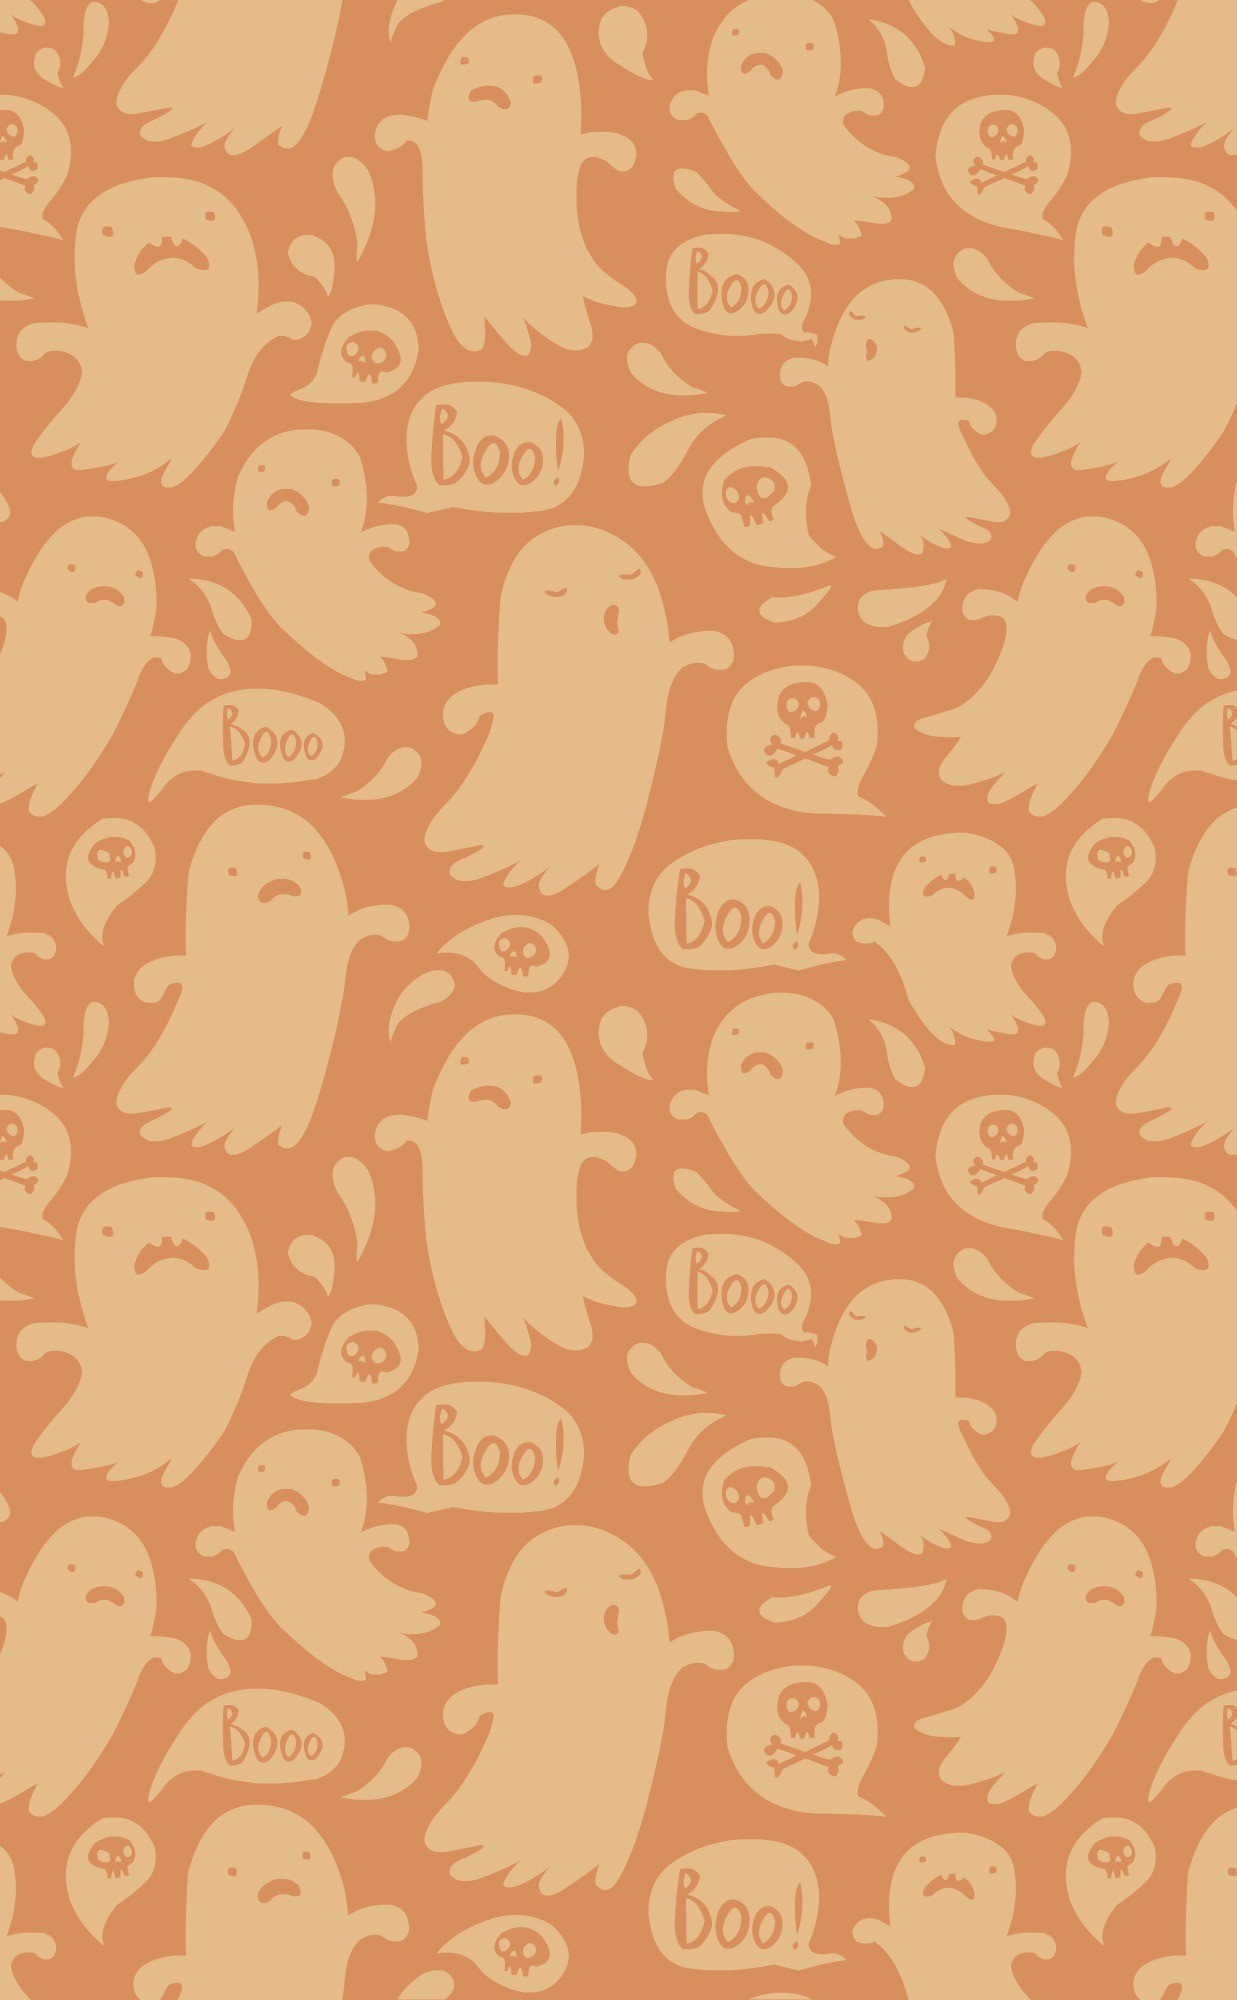 iPhone 5 Halloween Wallpaper halloween iphone background